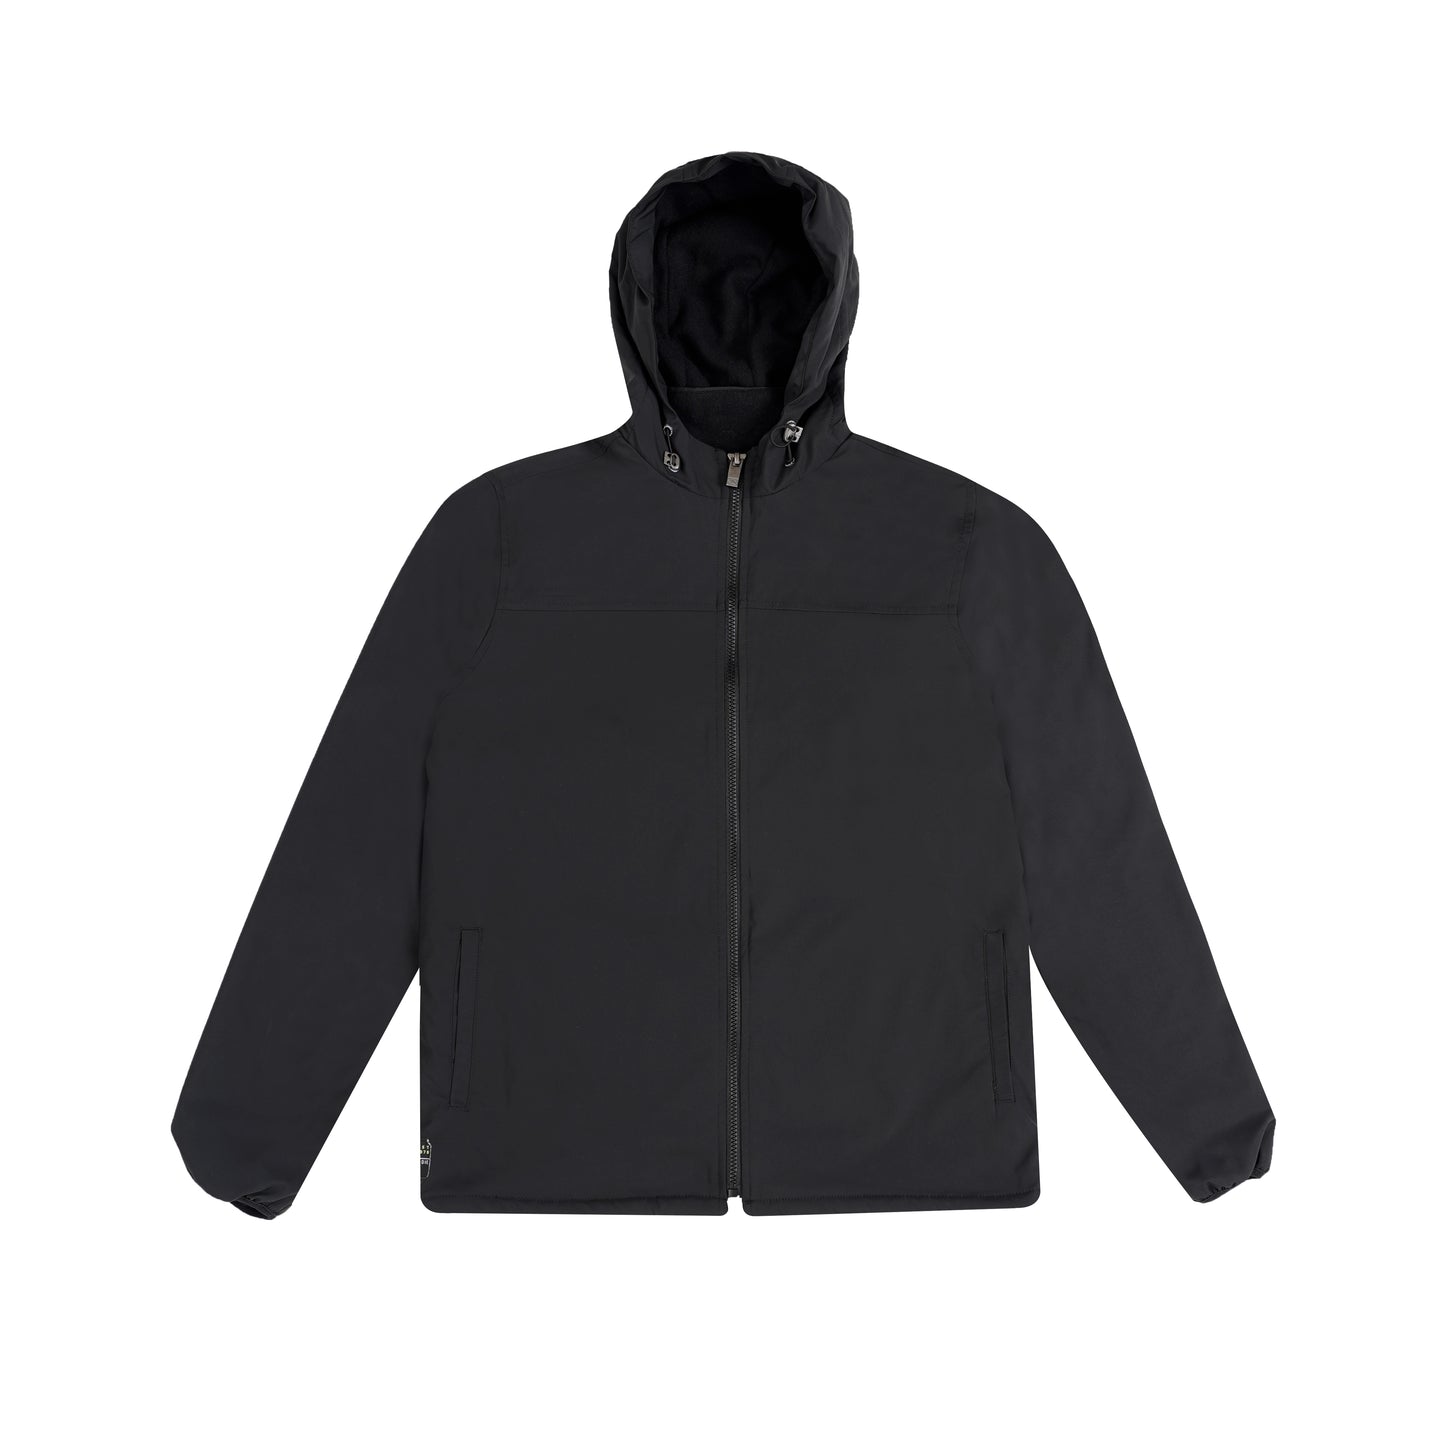 Black hoodie kids jackets